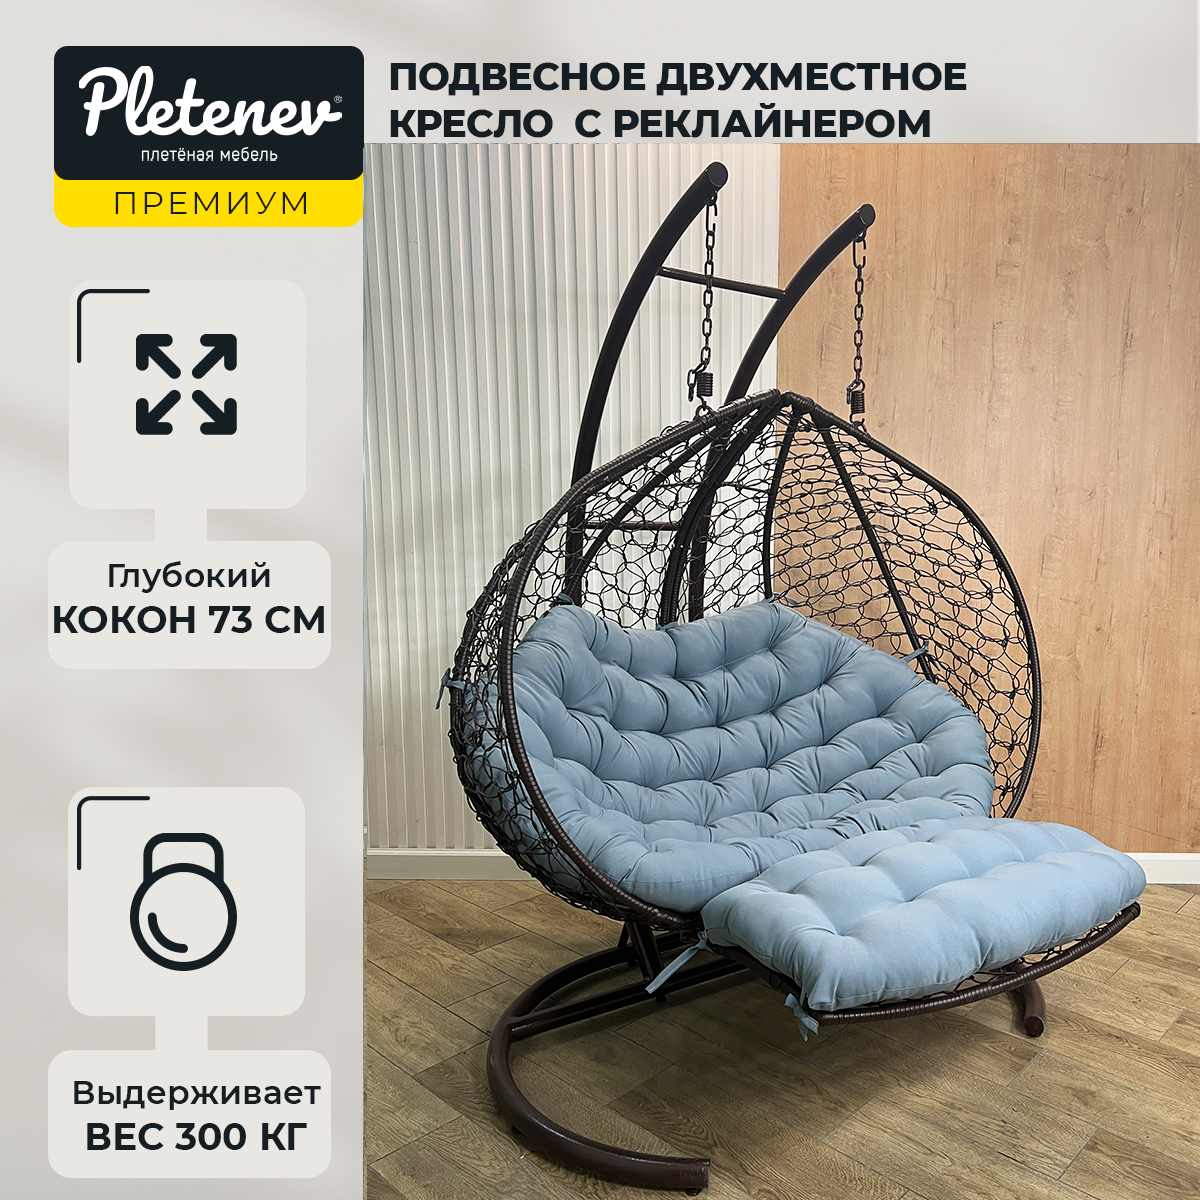 Подвесное кресло-реклайнер "Pletenev" двухместное коричневое со светло-серой подушкой